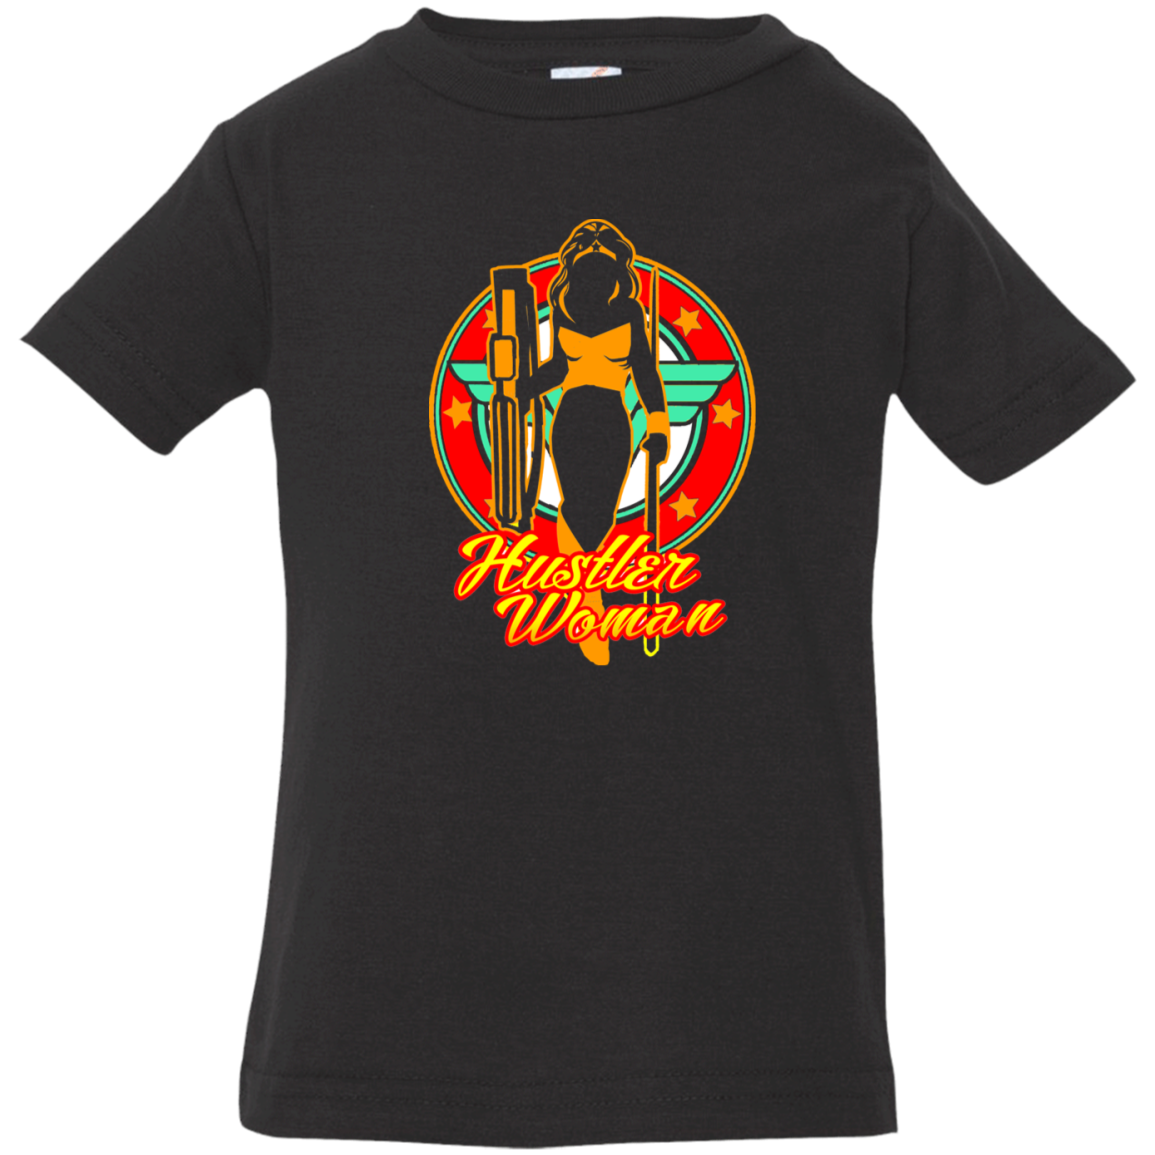 The GHOATS Custom Design #15. Hustler Woman. Infant Jersey T-Shirt